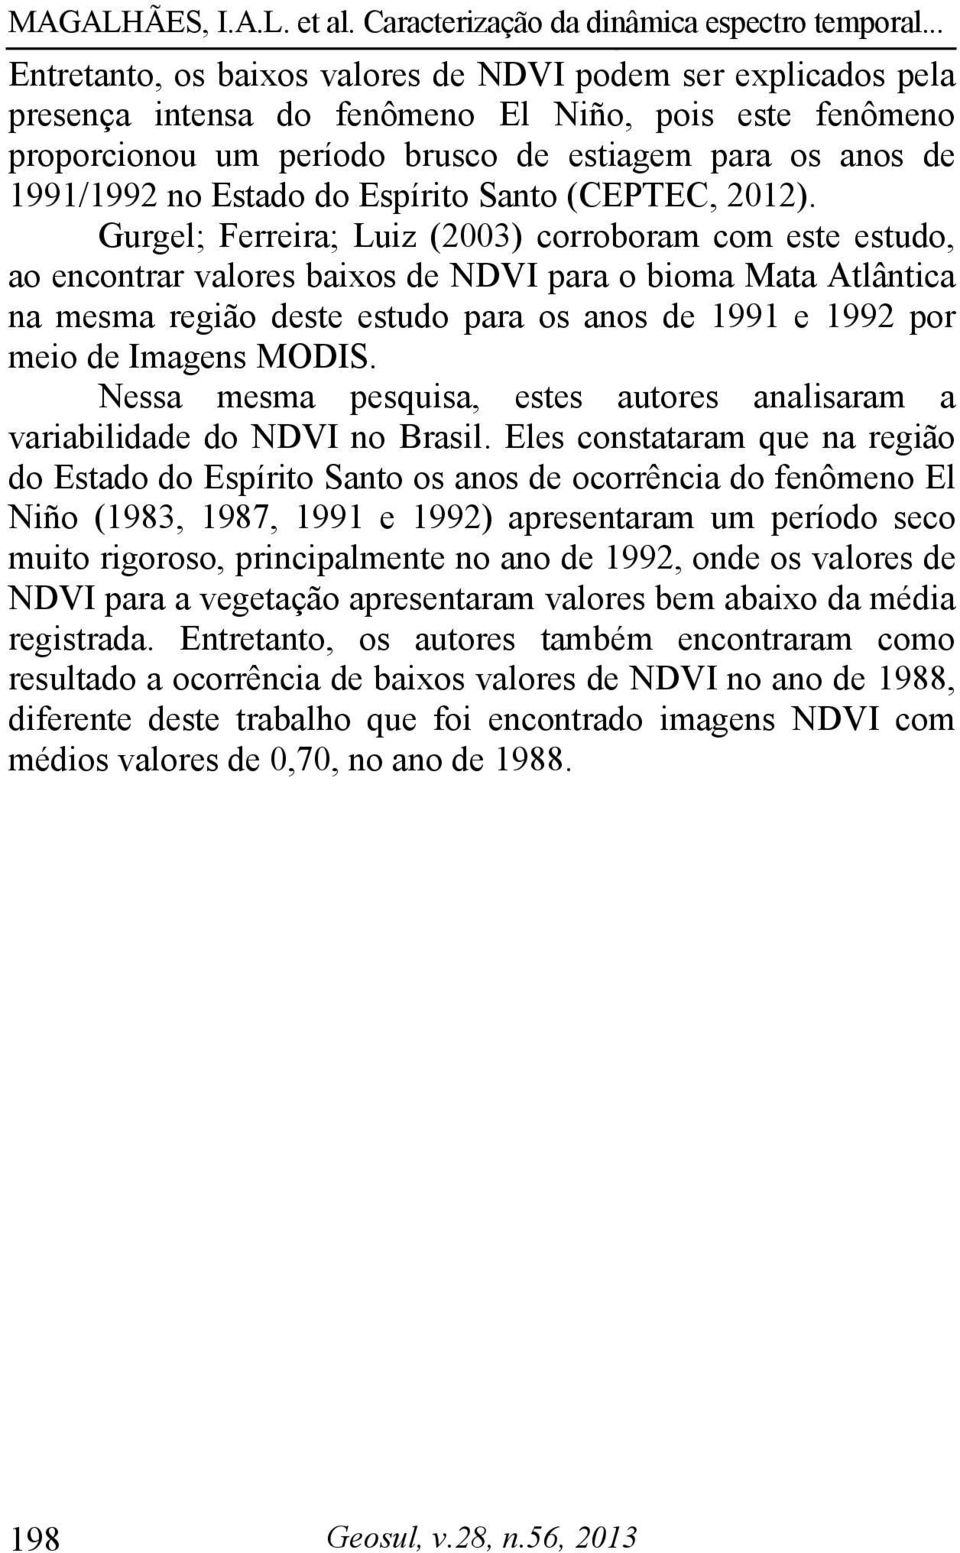 Gurgel; Ferreira; Luiz (2003) corroboram com este estudo, ao encontrar valores baixos de NDVI para o bioma Mata Atlântica na mesma região deste estudo para os anos de 1991 e 1992 por meio de Imagens